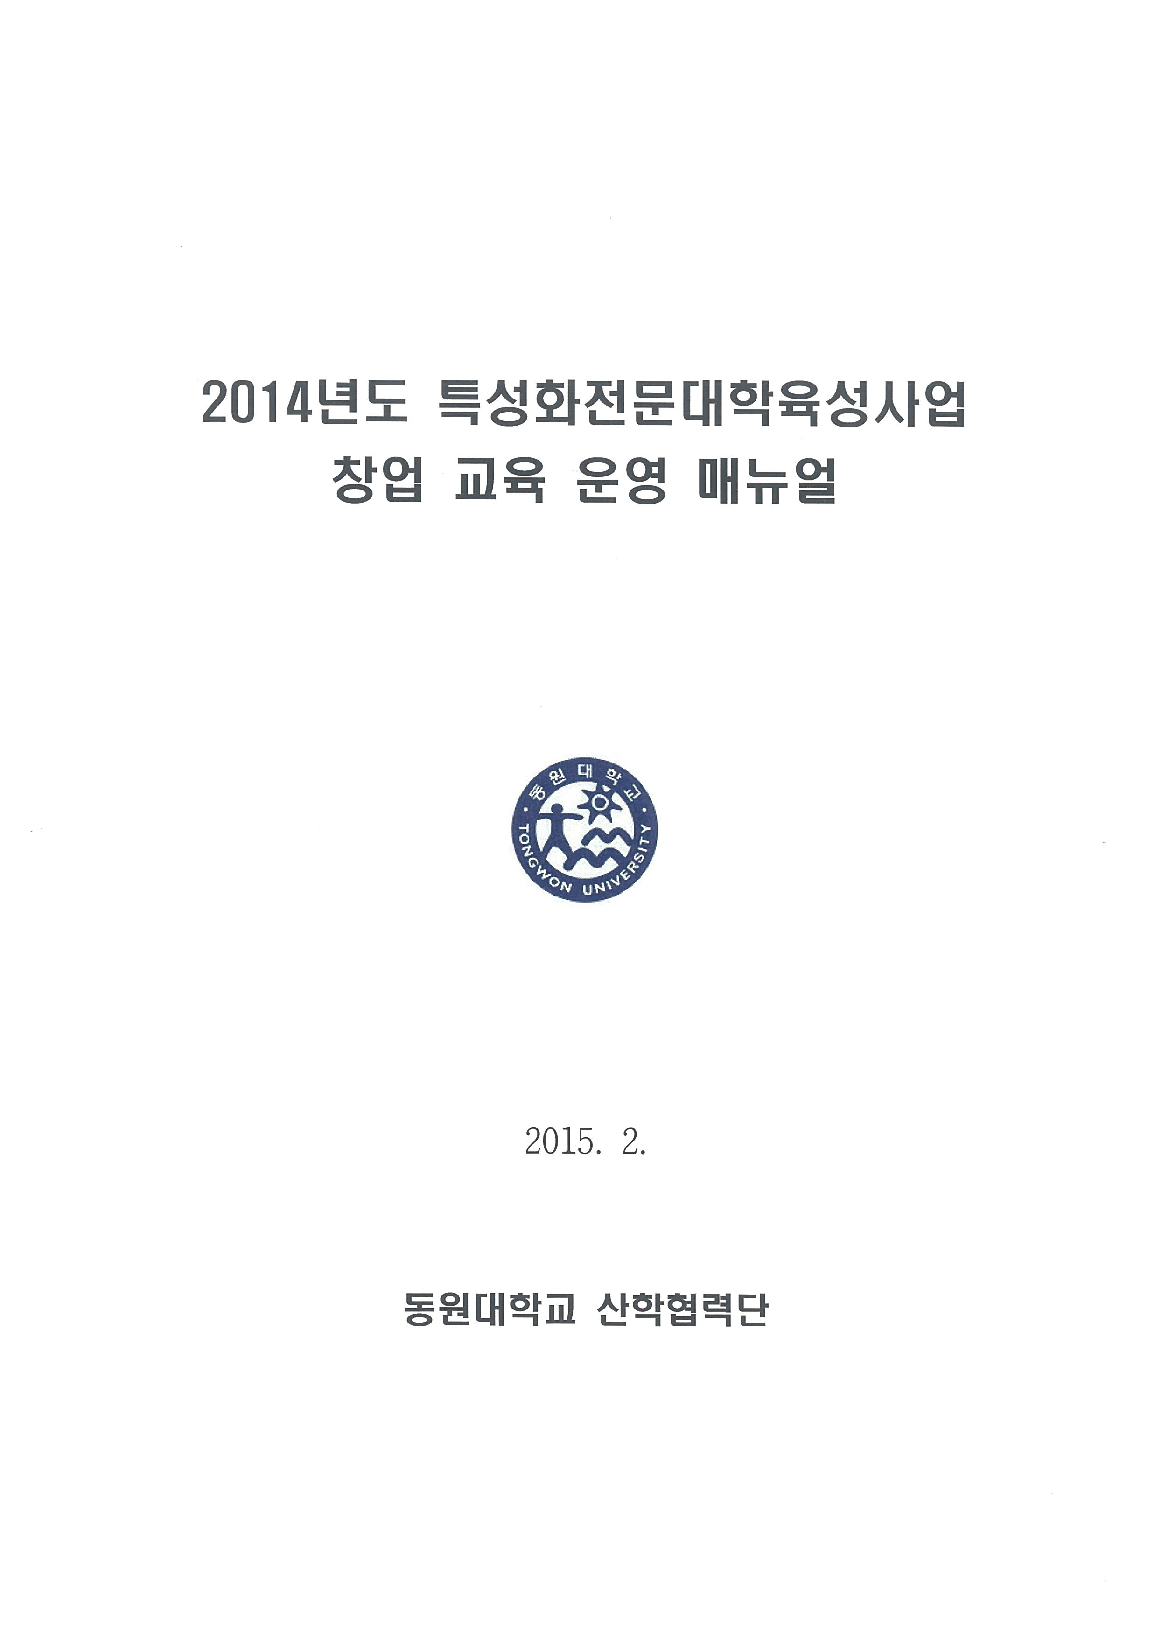 2014년 특성화전문대학육성사업 창업교육 운영 매뉴얼 -3부